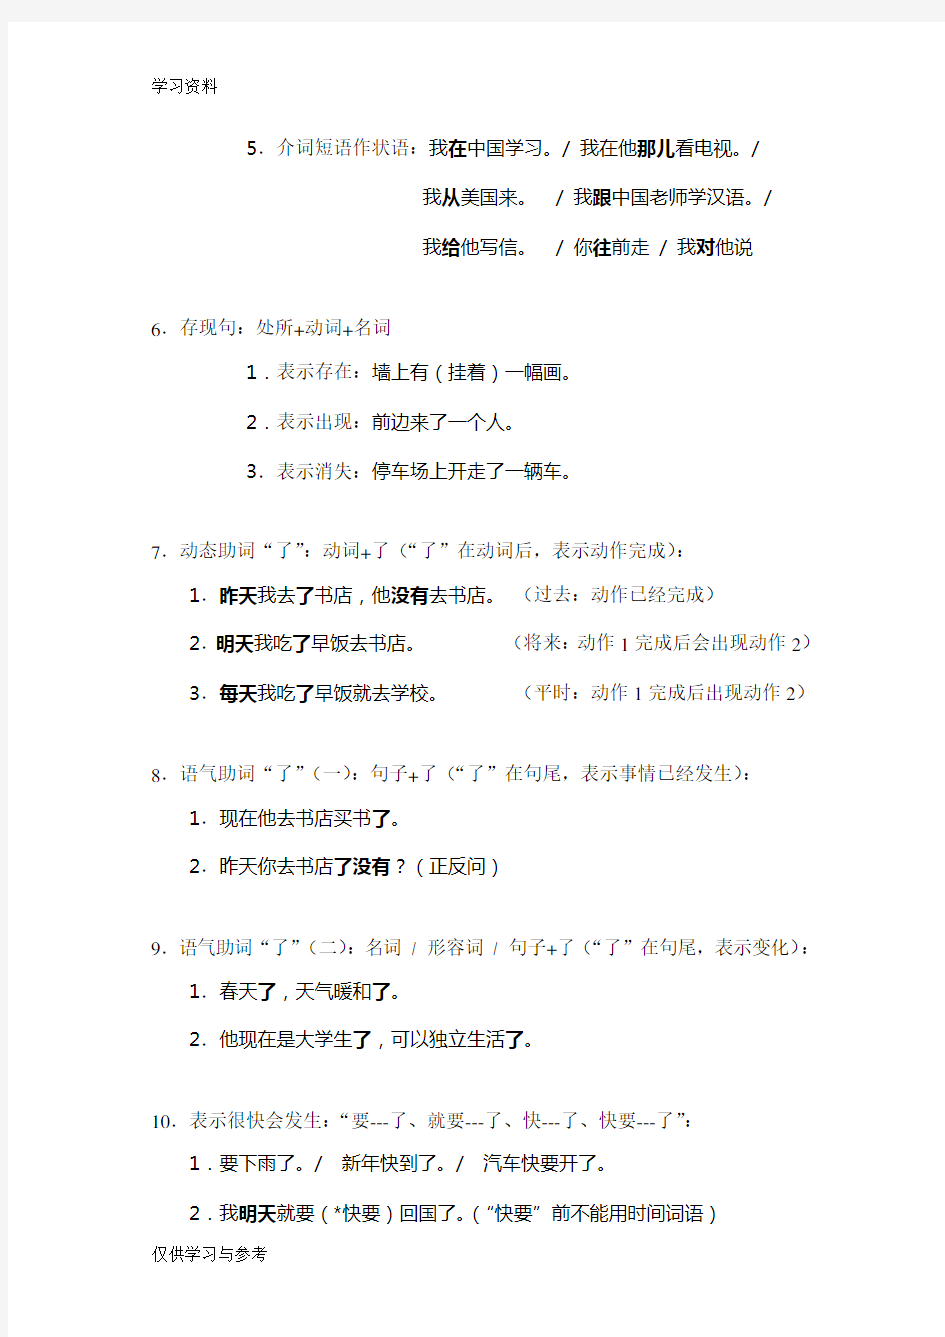 对外汉语教学40基本语法和教案复习过程